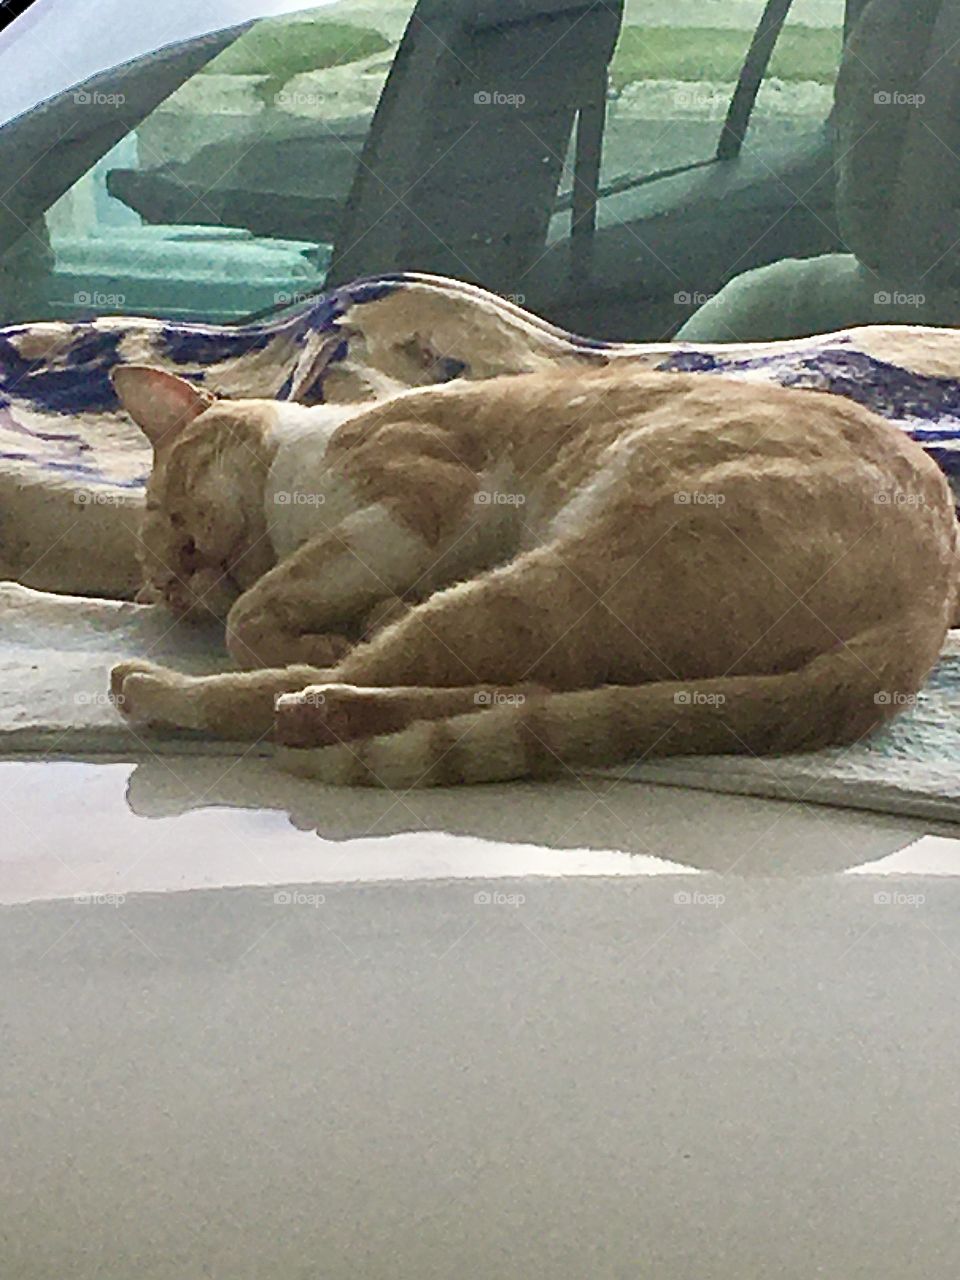 El gato callejero viene a dormir en mi carro porque le doy comida y se encariño. Me gusta cojerlo así dormido se ve tan tierno.